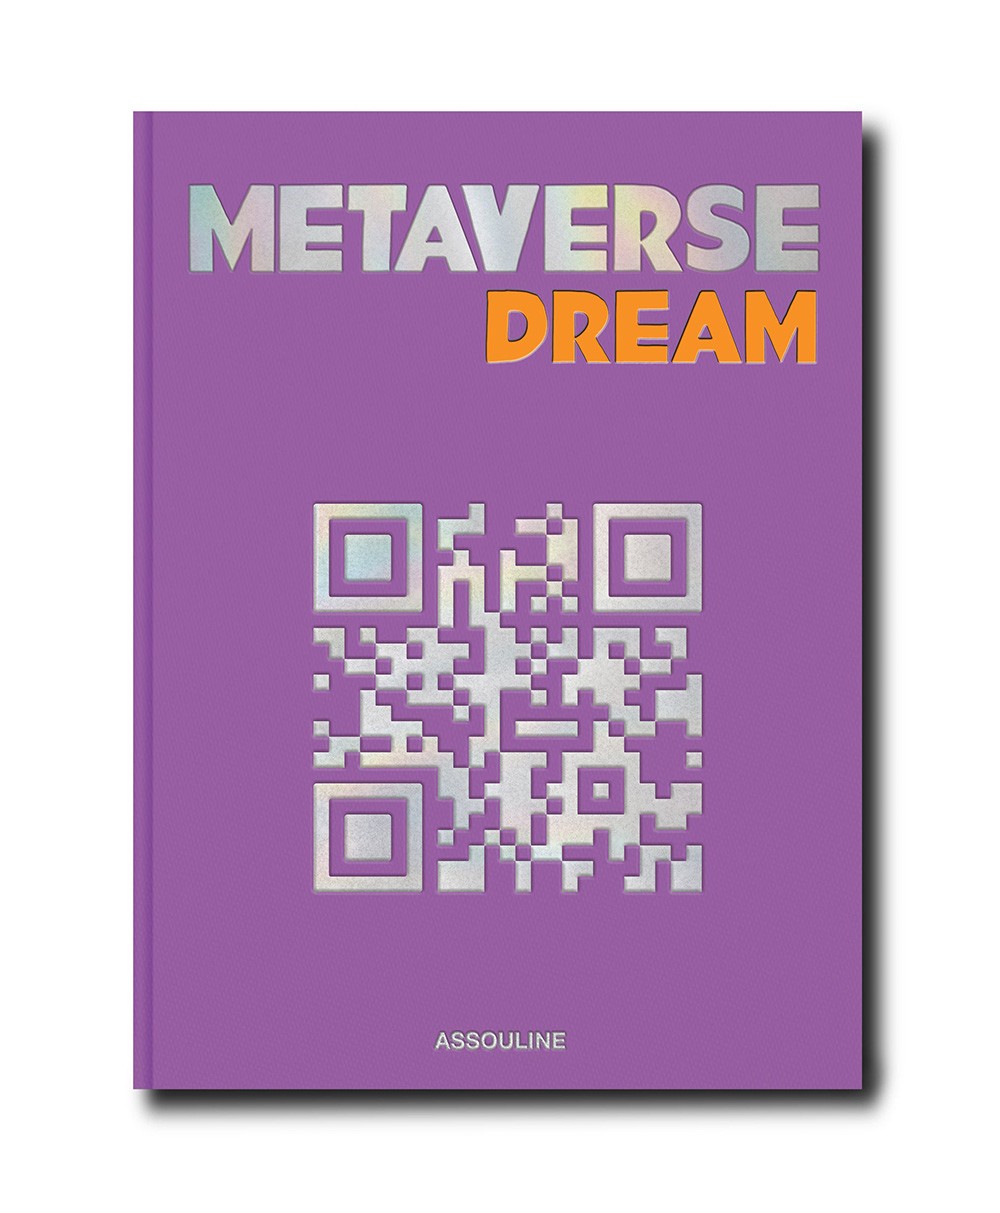 Produktbild des Coffee Table Travel Books „Metaverse“ von Assouline im RAUM concept store 